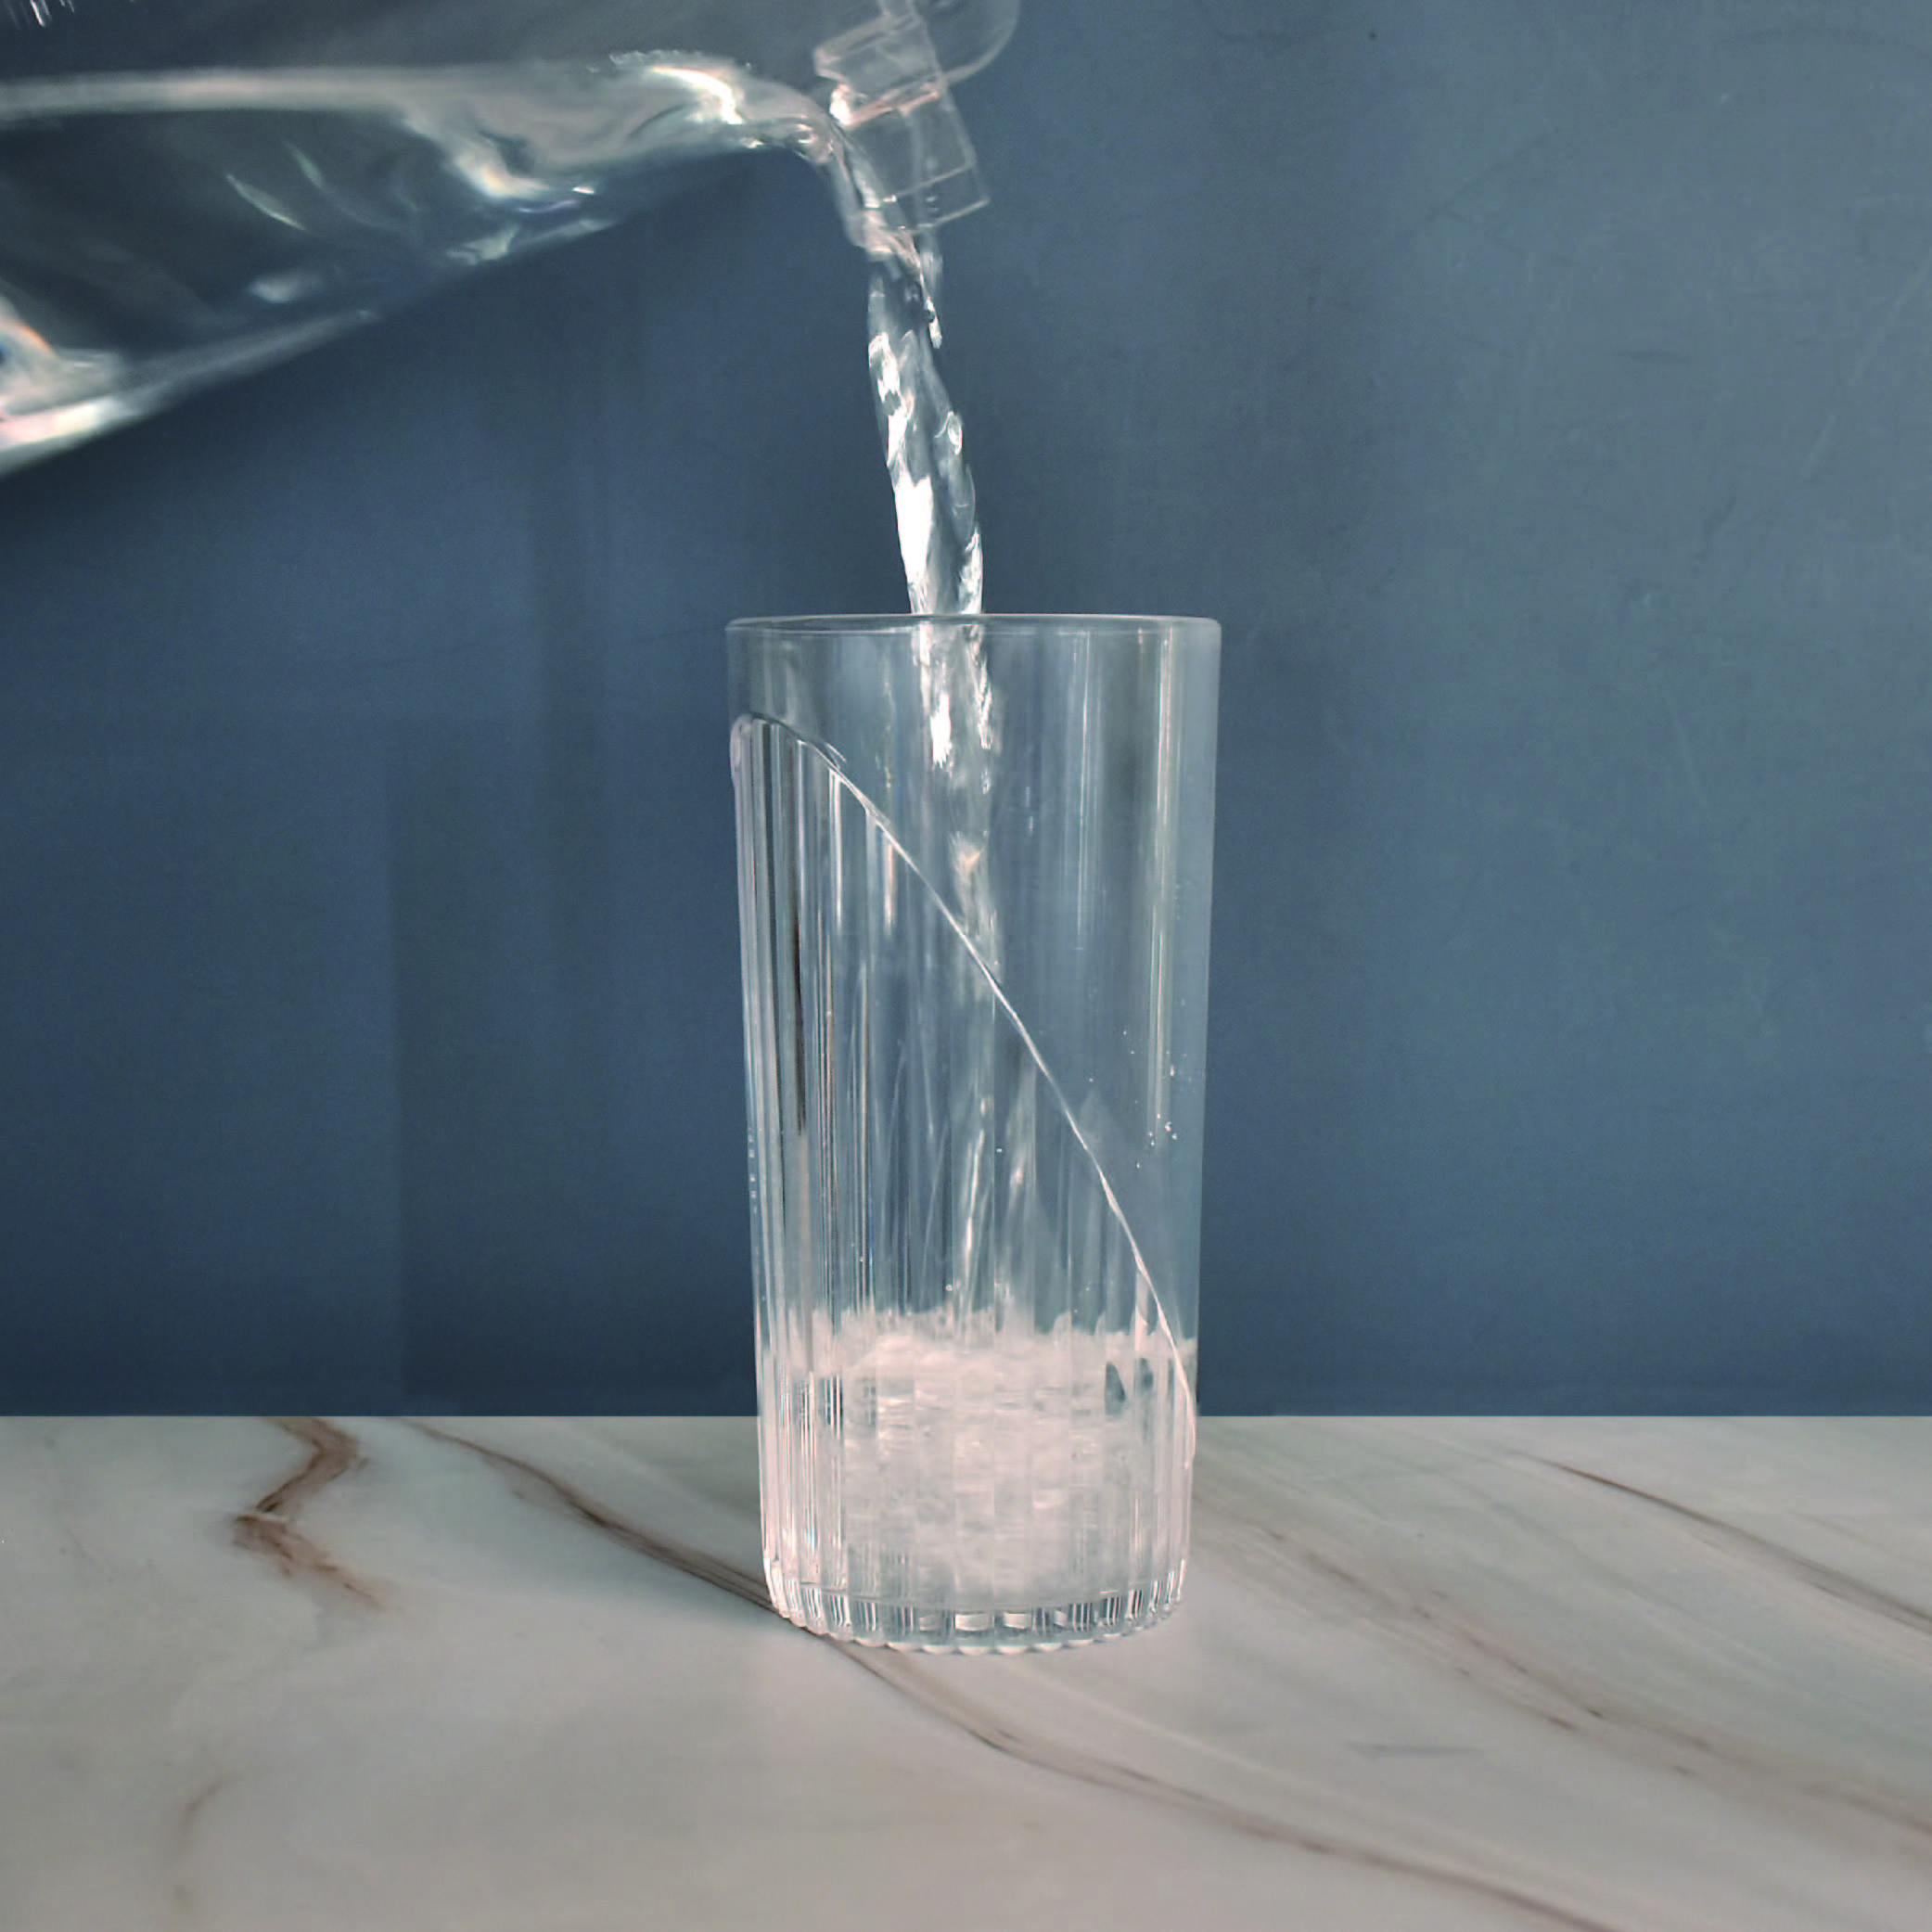 旋光透明塑膠杯高款-480ml